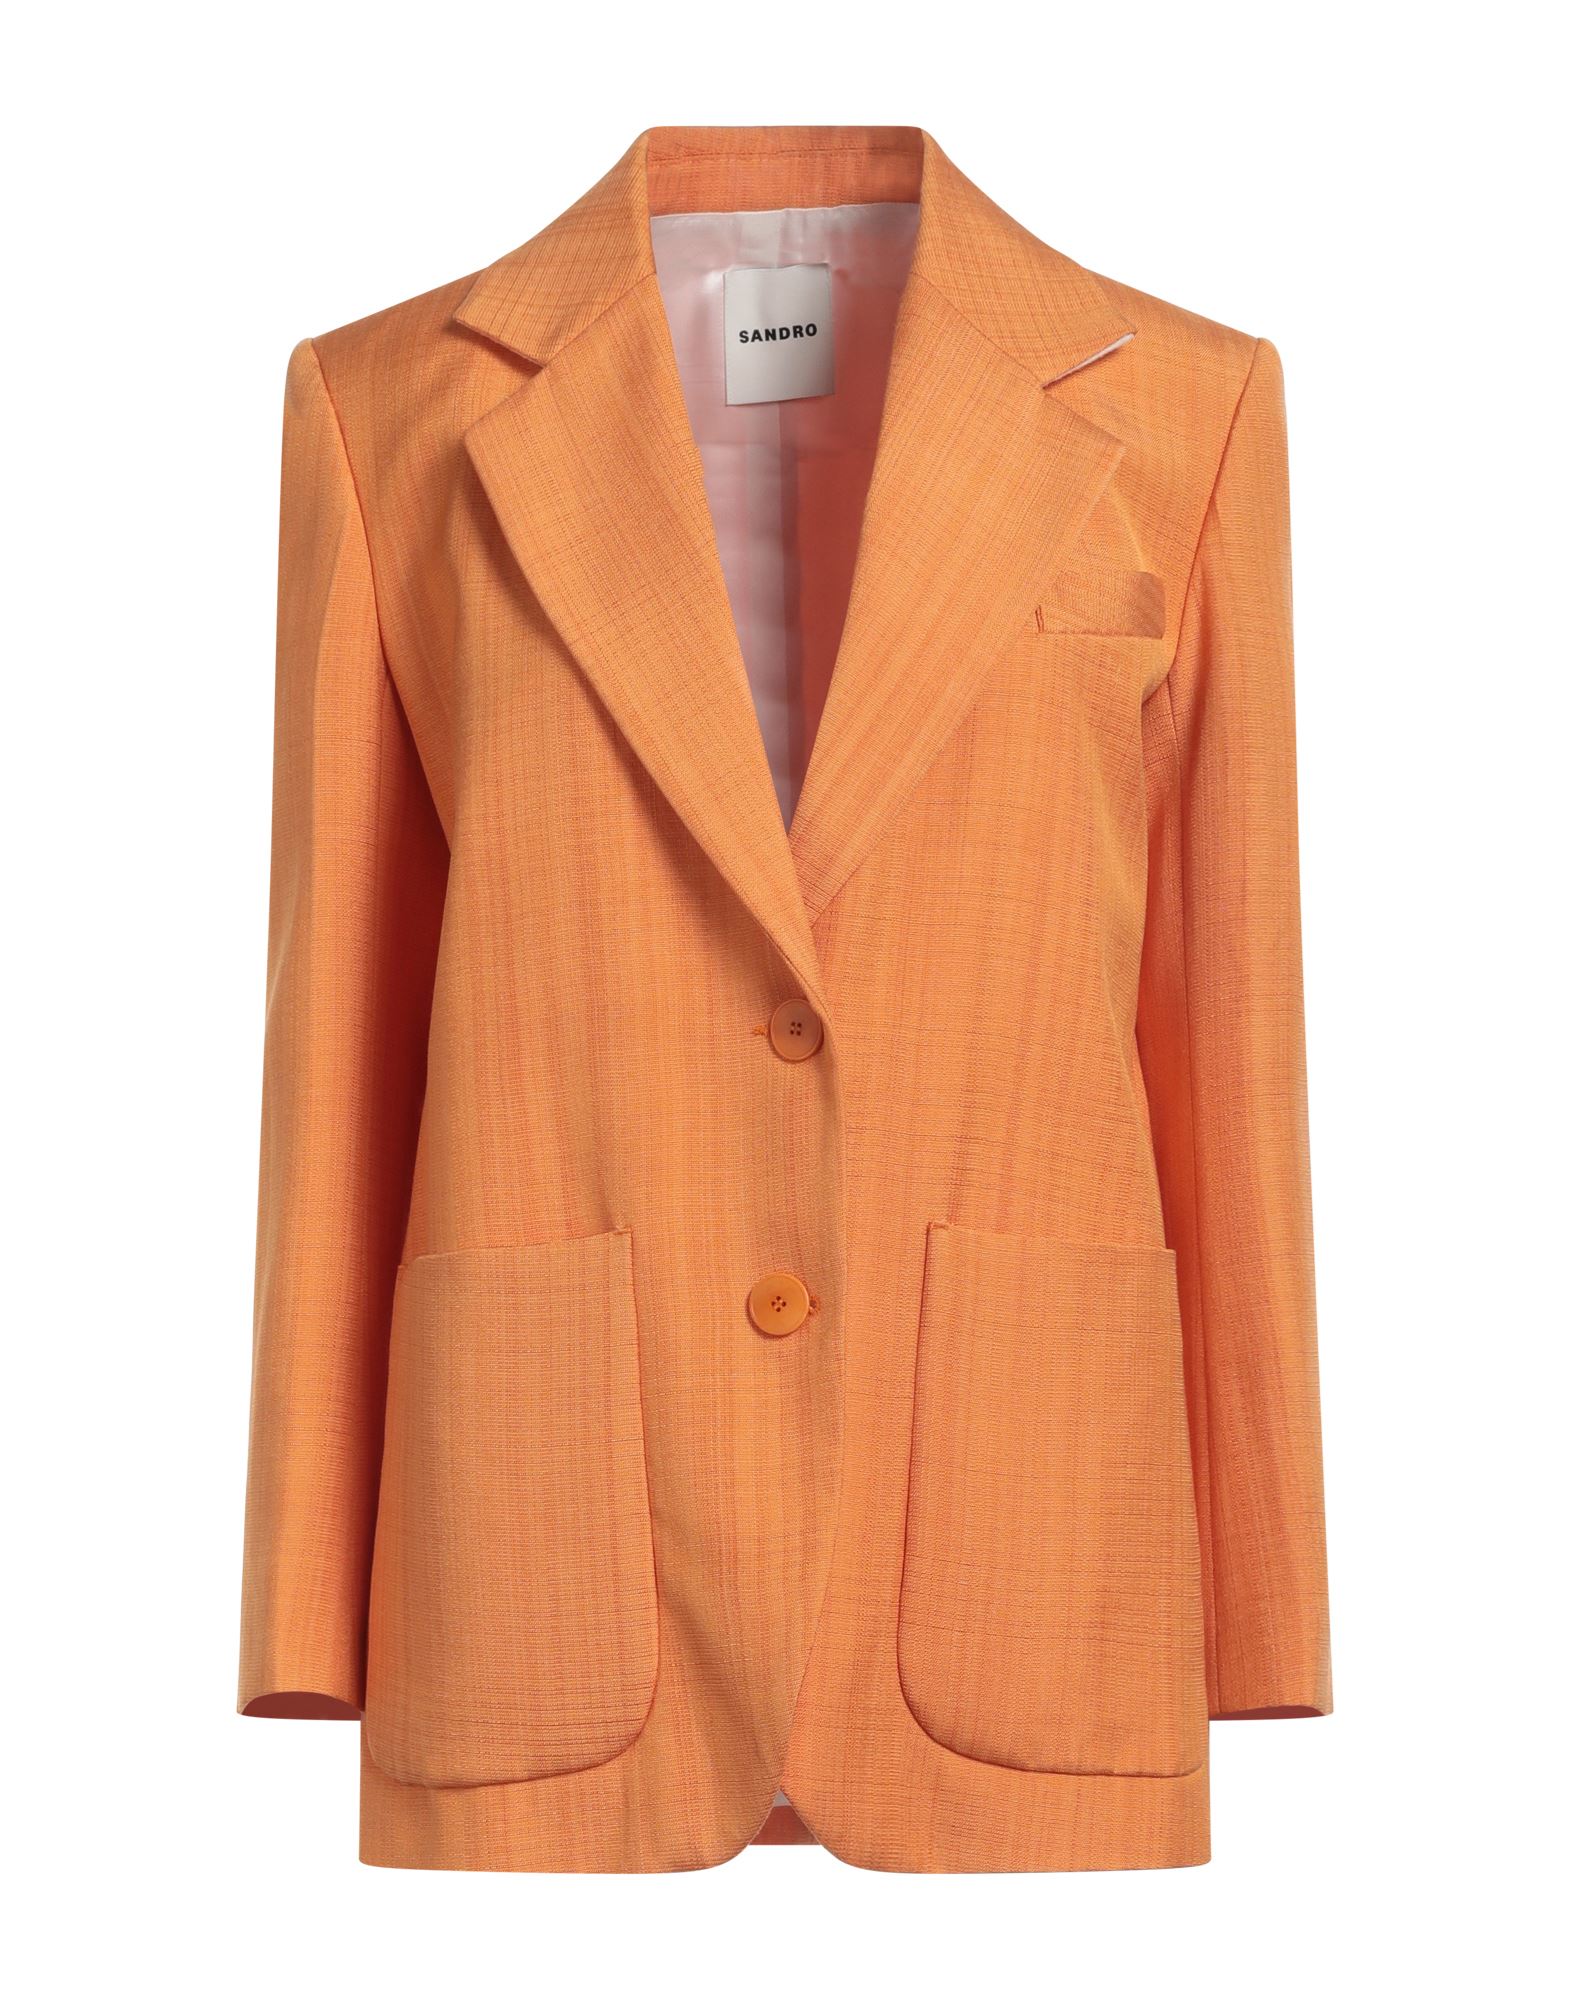 Sandro Woman Suit Jacket Orange Size 8 Viscose